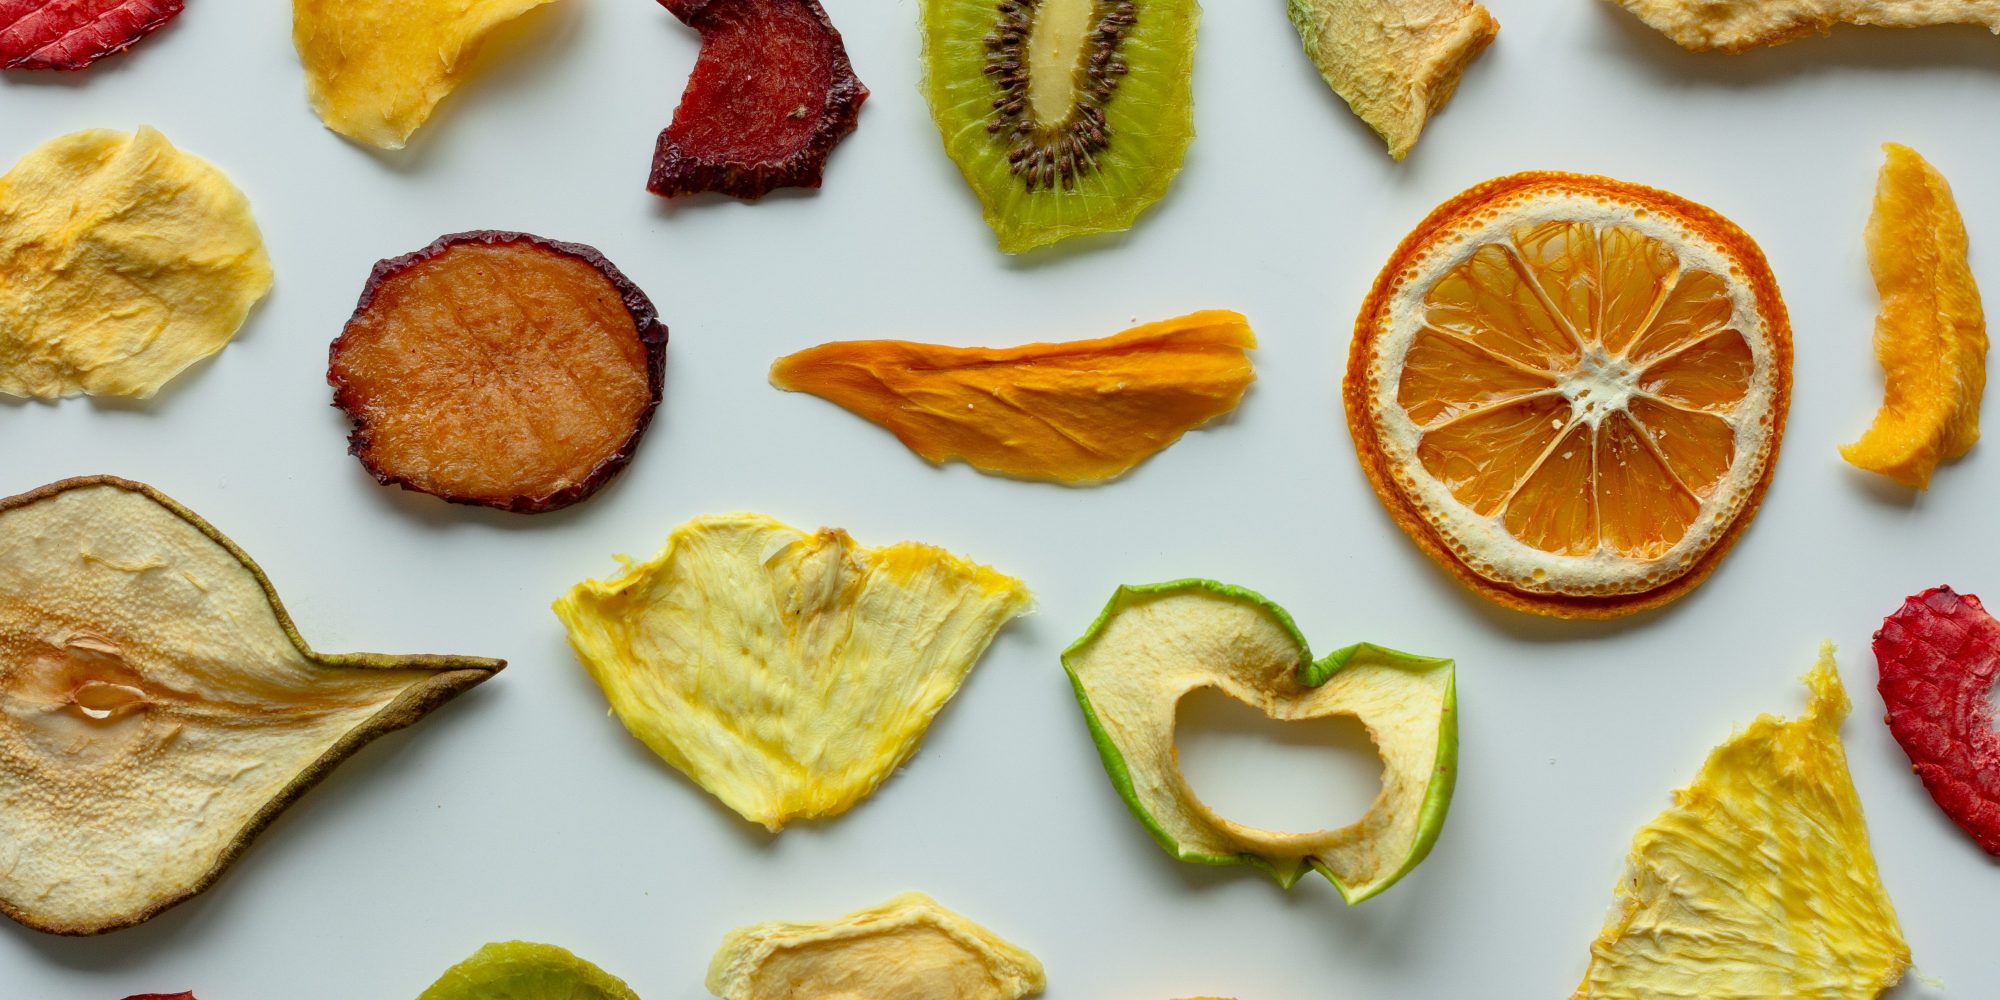 Αυτά είναι τα 4 πιο υγιεινά αποξηραμένα φρούτα. Σημείωνε!